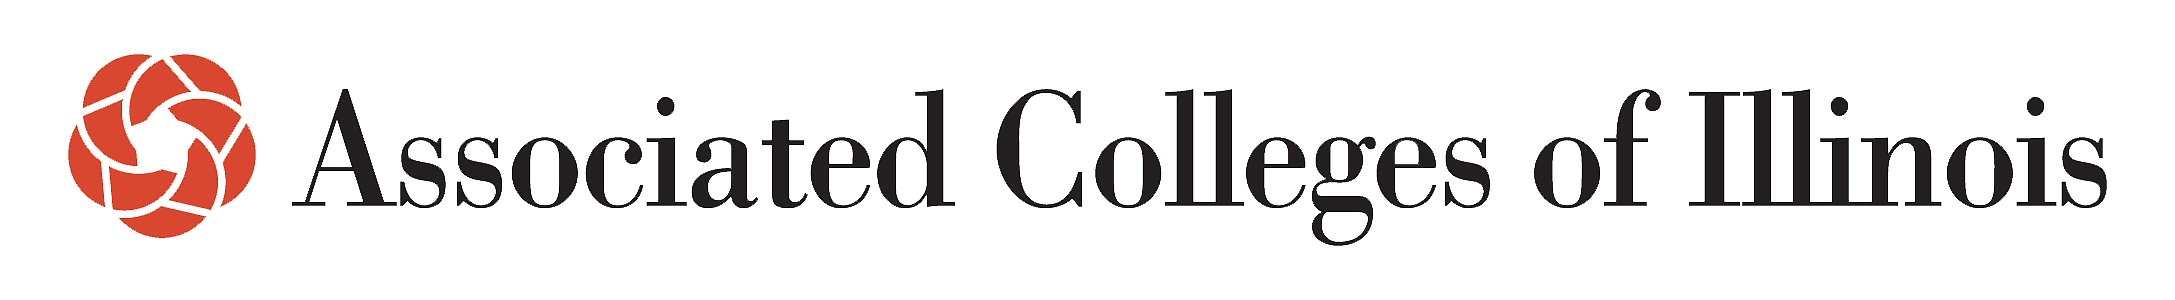 ACI-logo-2015